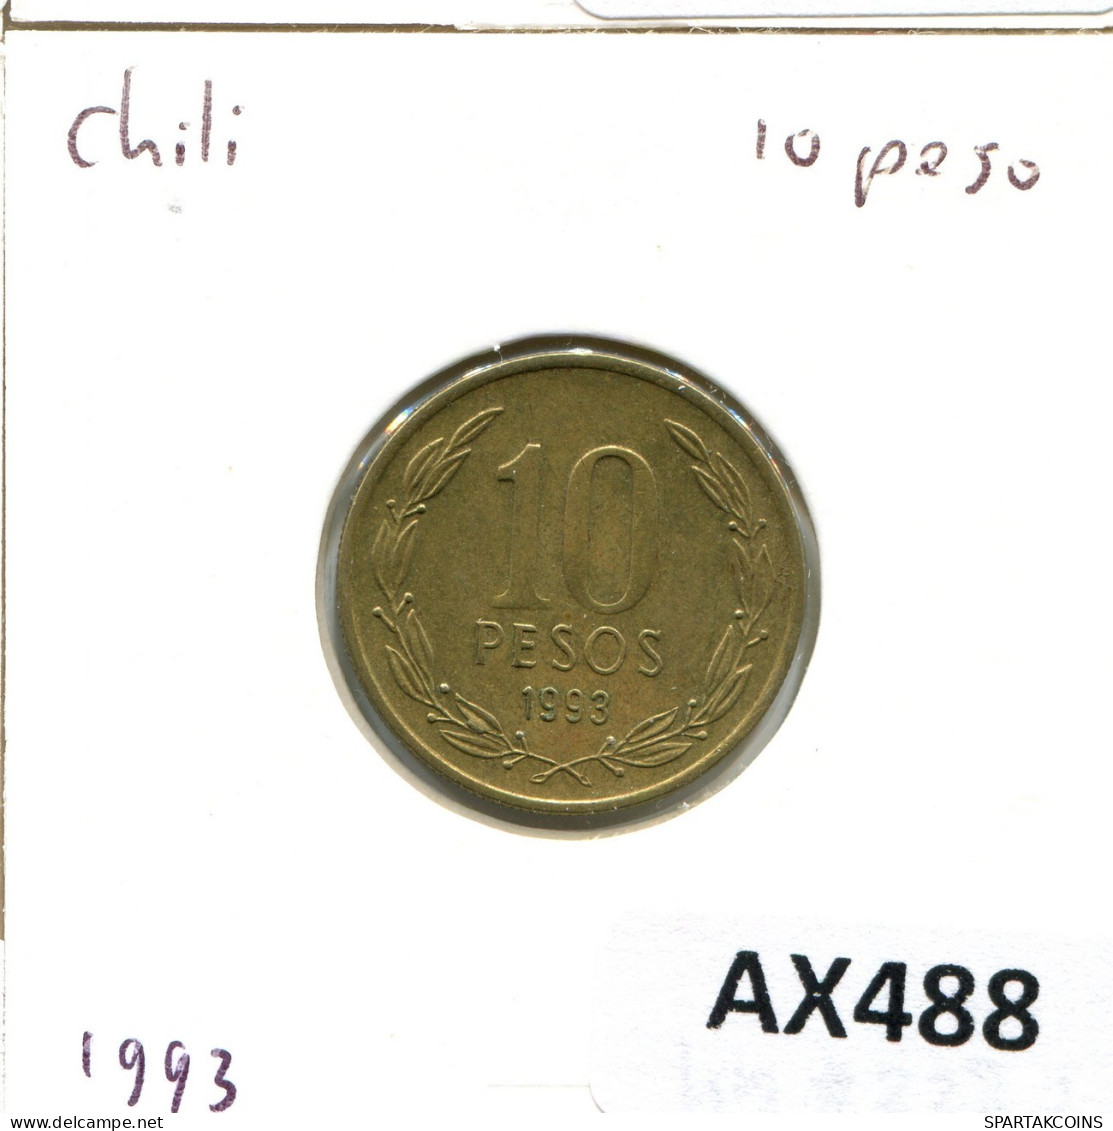 10 PESOS 1993 CHILE Coin #AX488.U.A - Chile